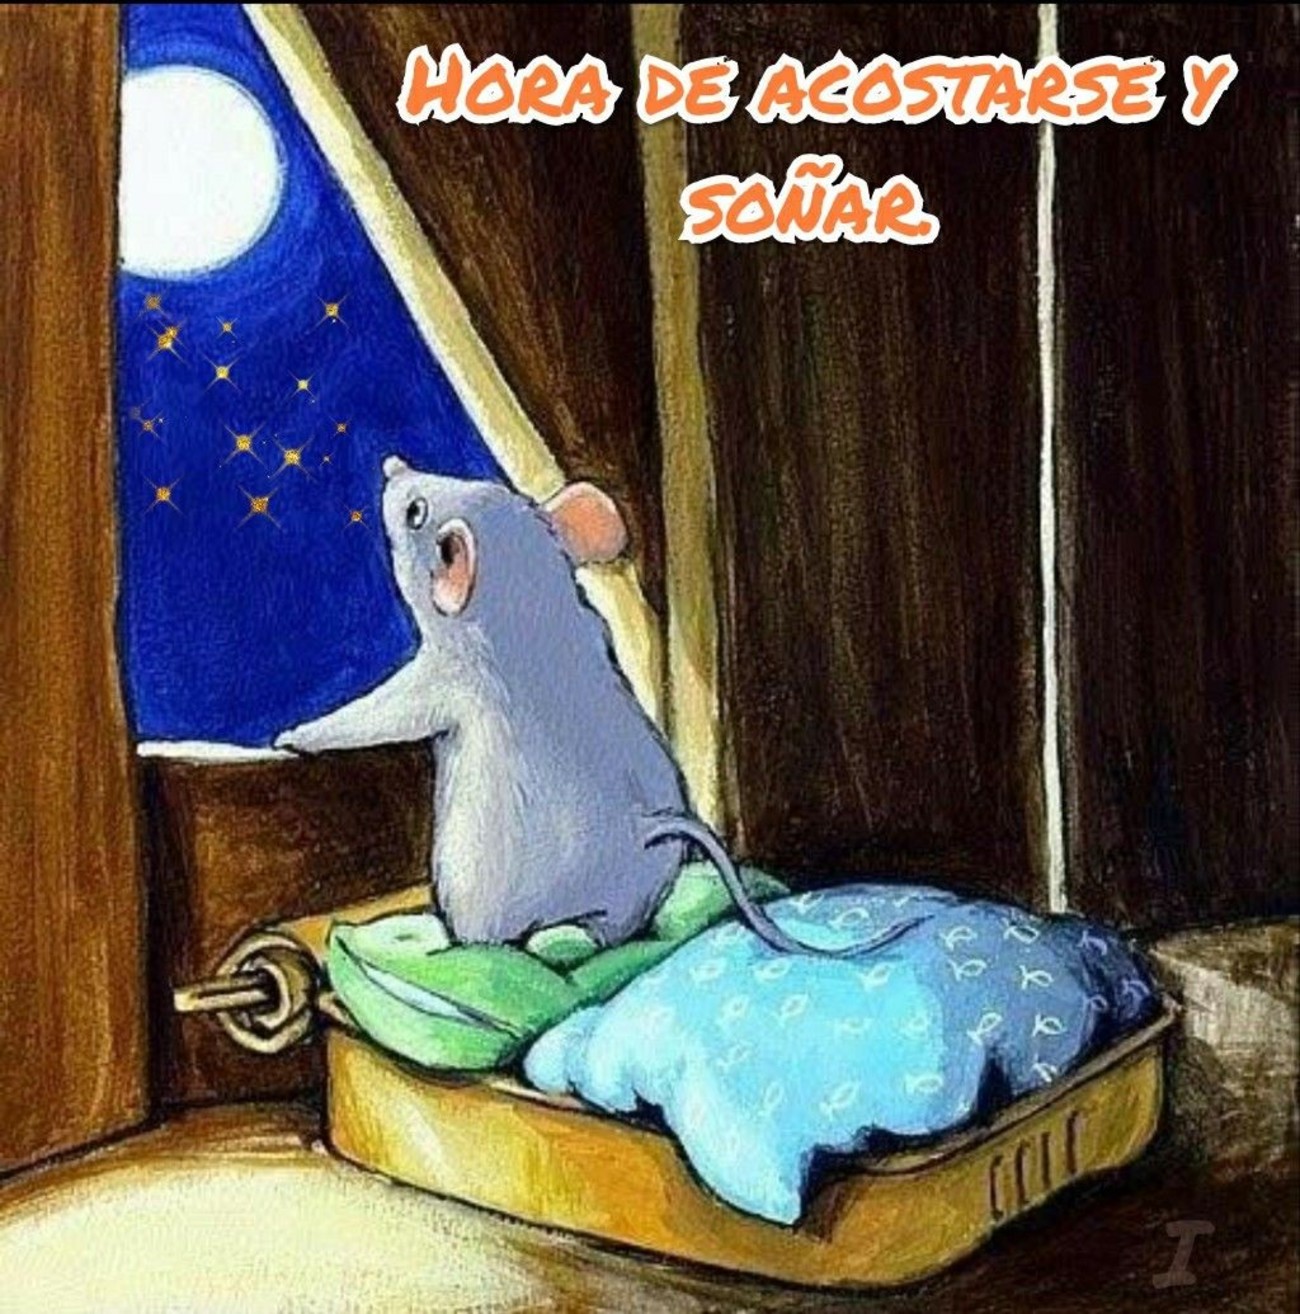 Спокойной мыши. Спокойной ночи мышонок. Спокойной ночи мышка. Сладких снов мышонок. Доброй ночи мышки.